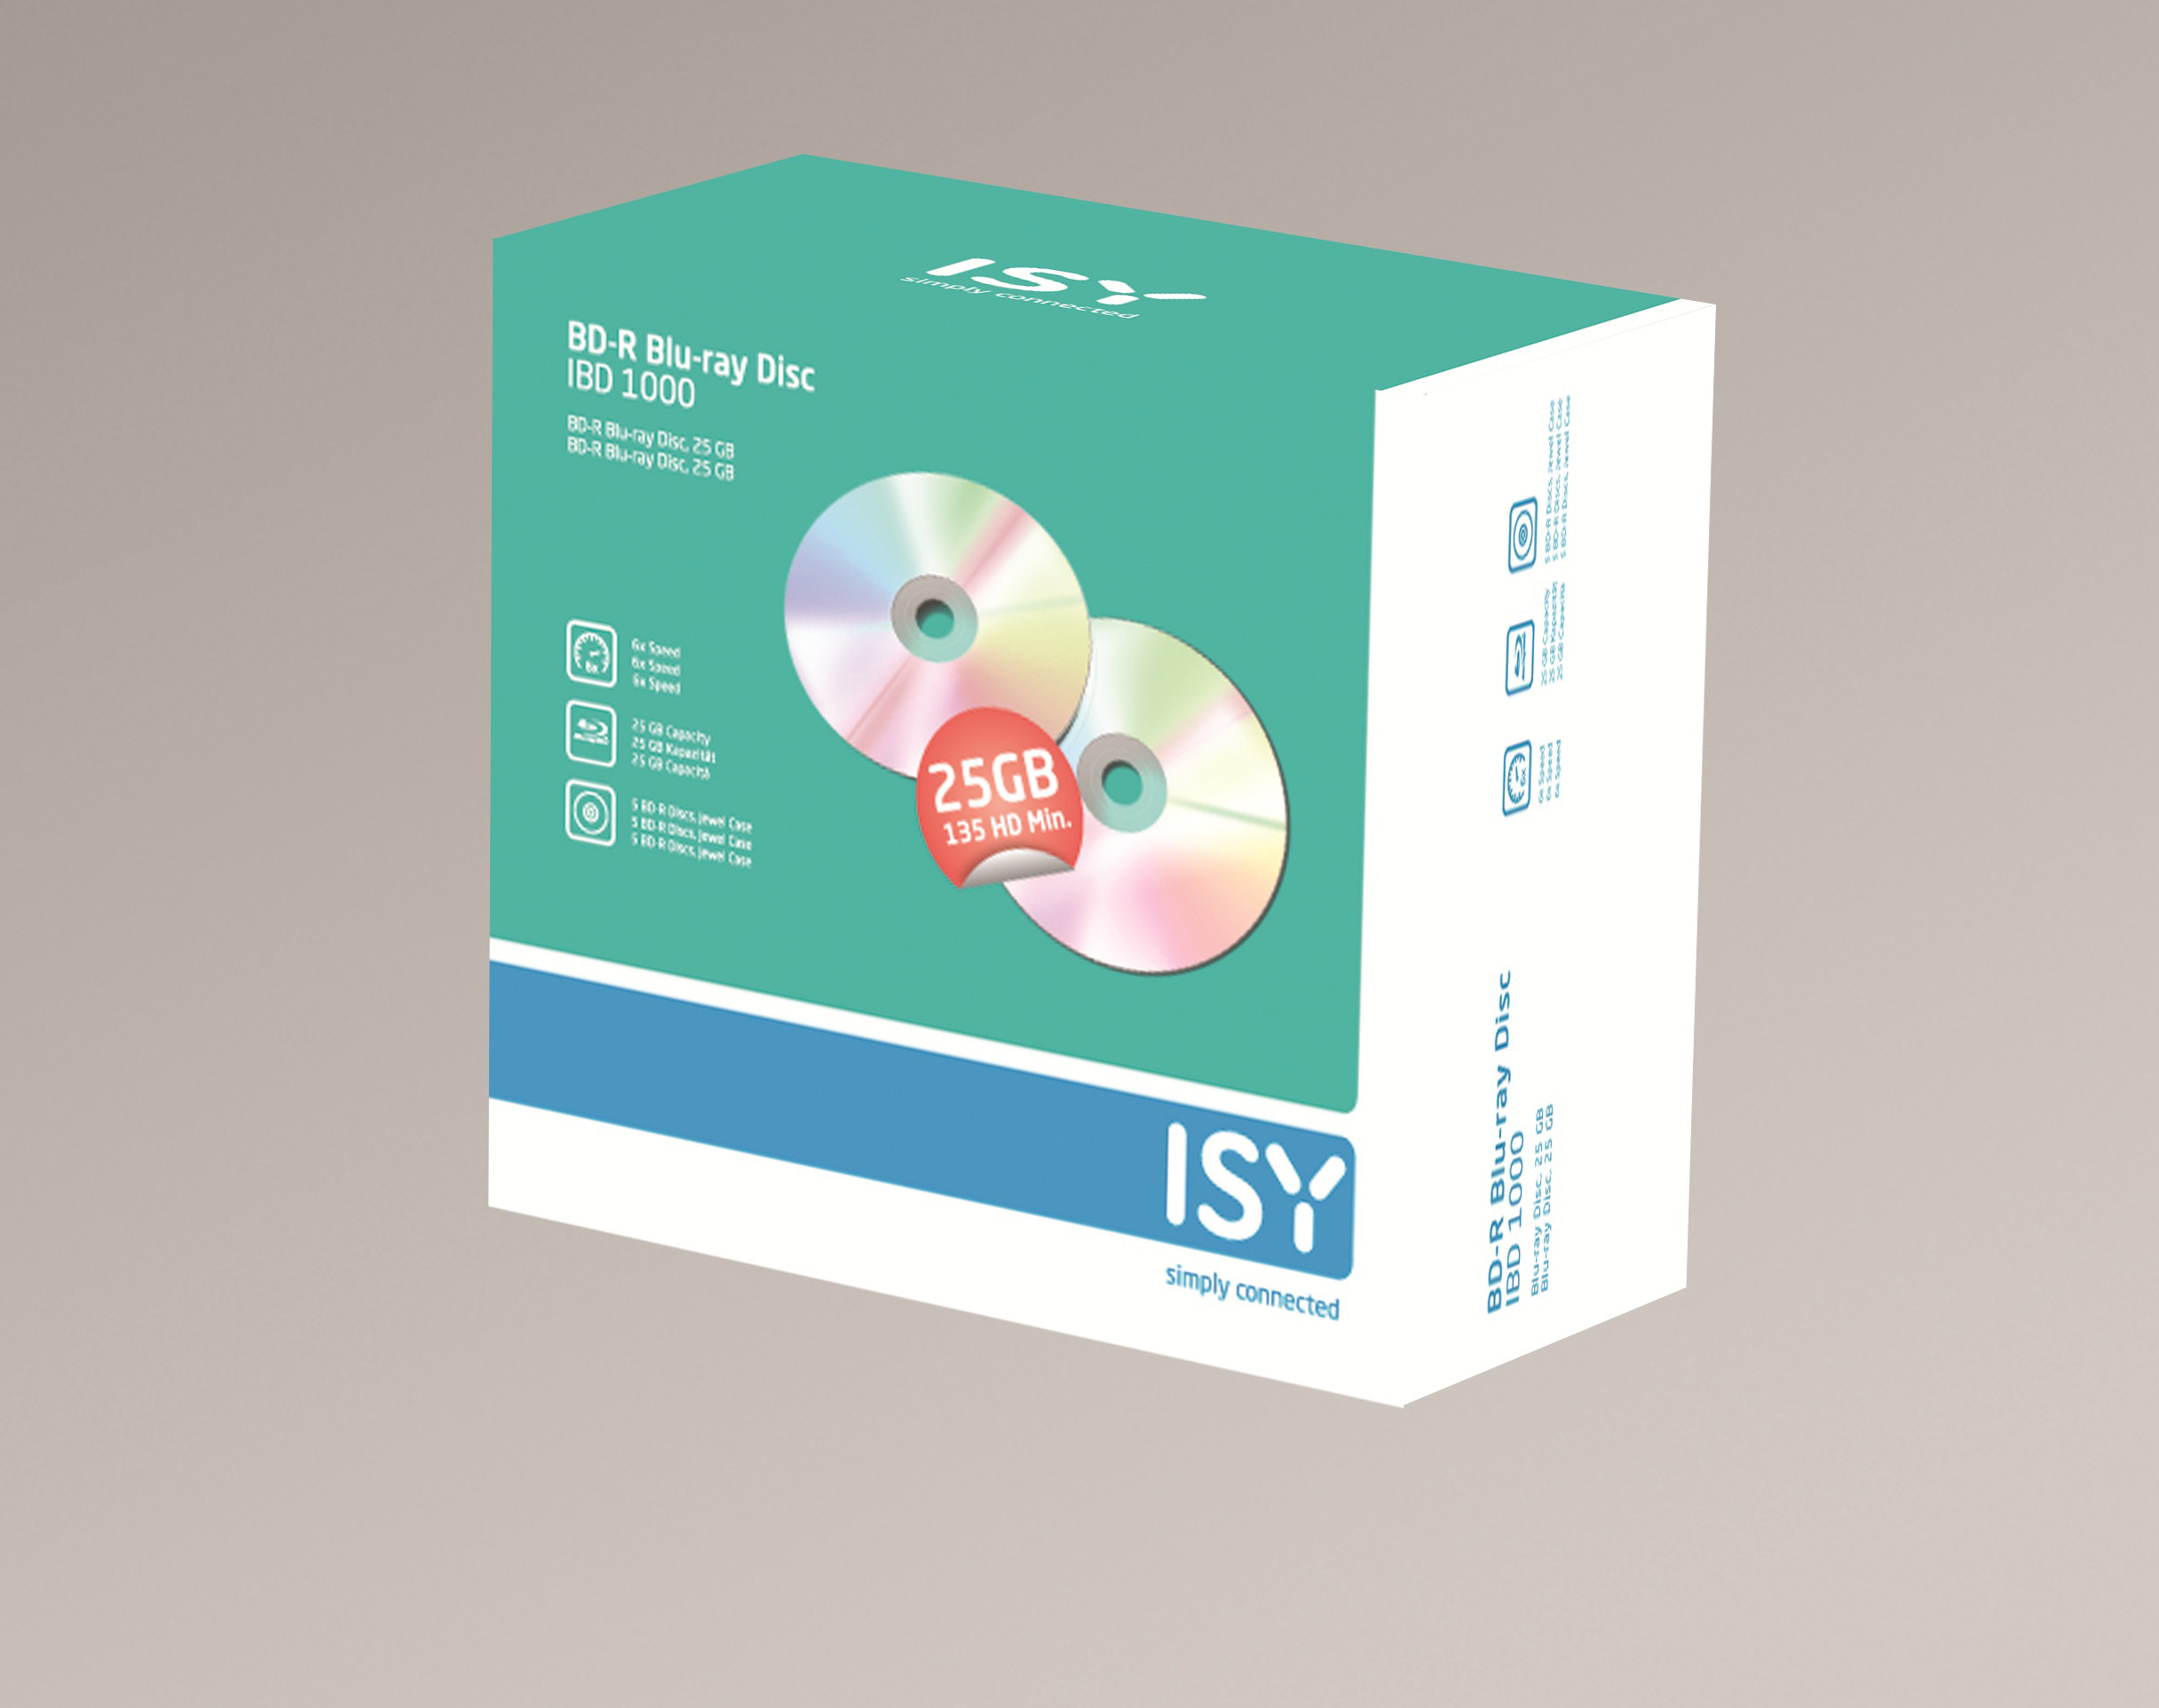 5er BD-R Blu-ray Disc Jewelcase ISY IBD-1000 Pack